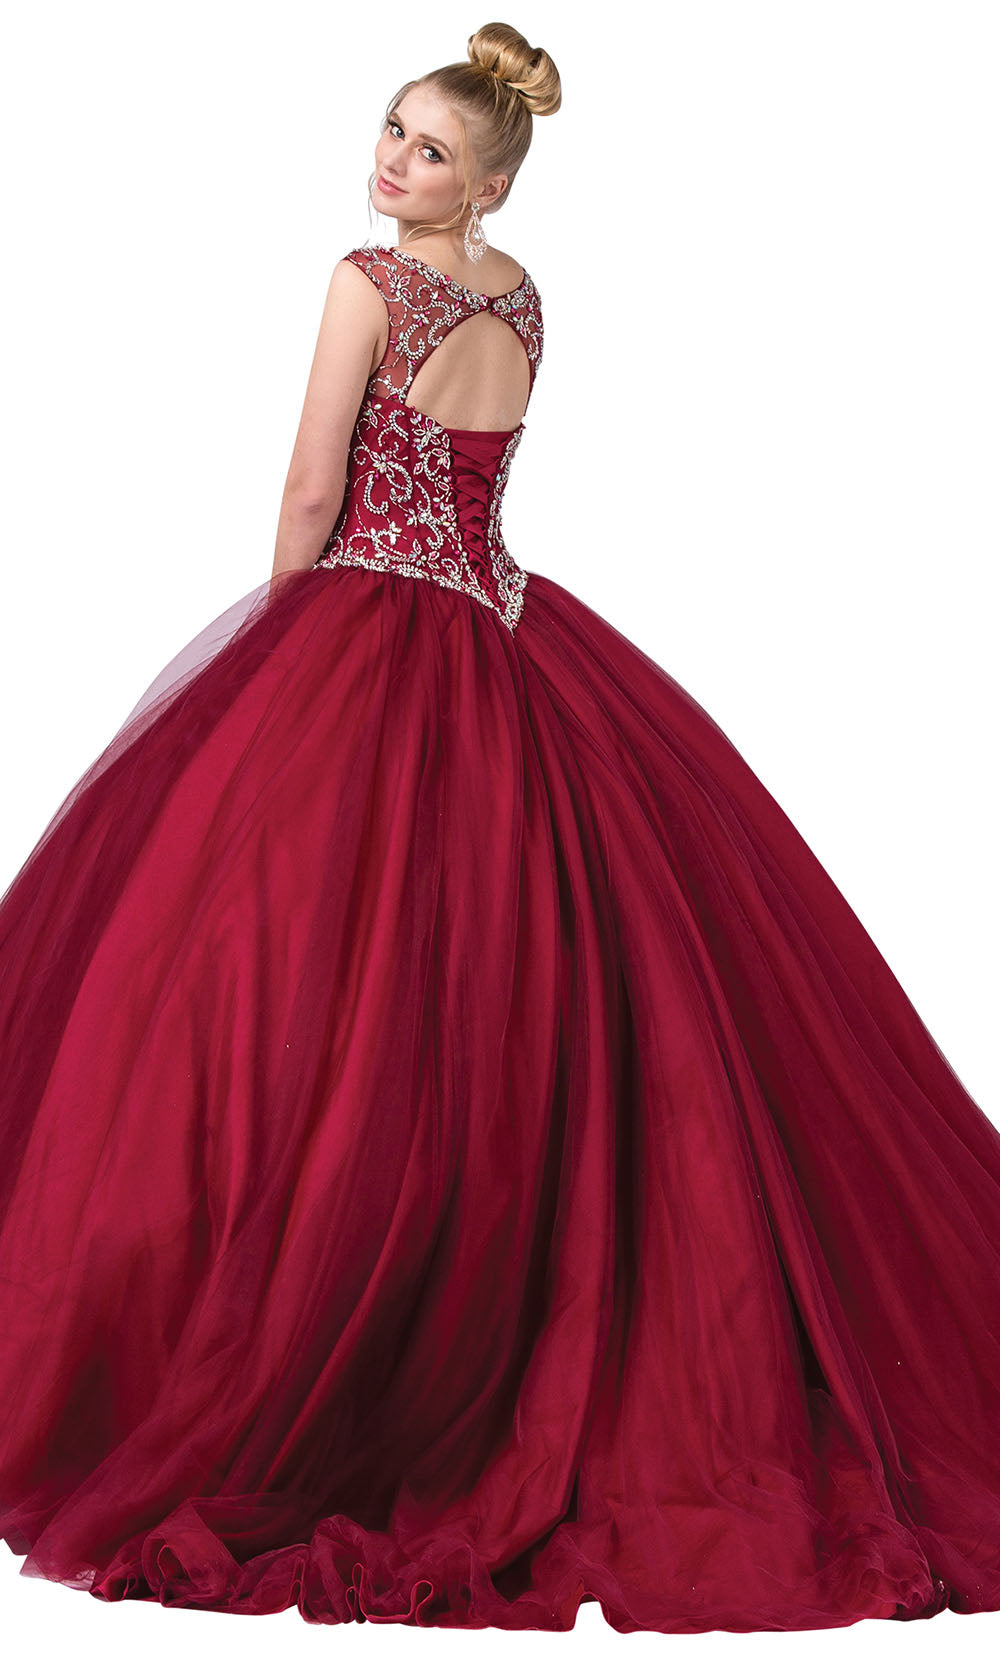 Dancing Queen - 1267 Embellished Scoop Neck Ballgown In Red